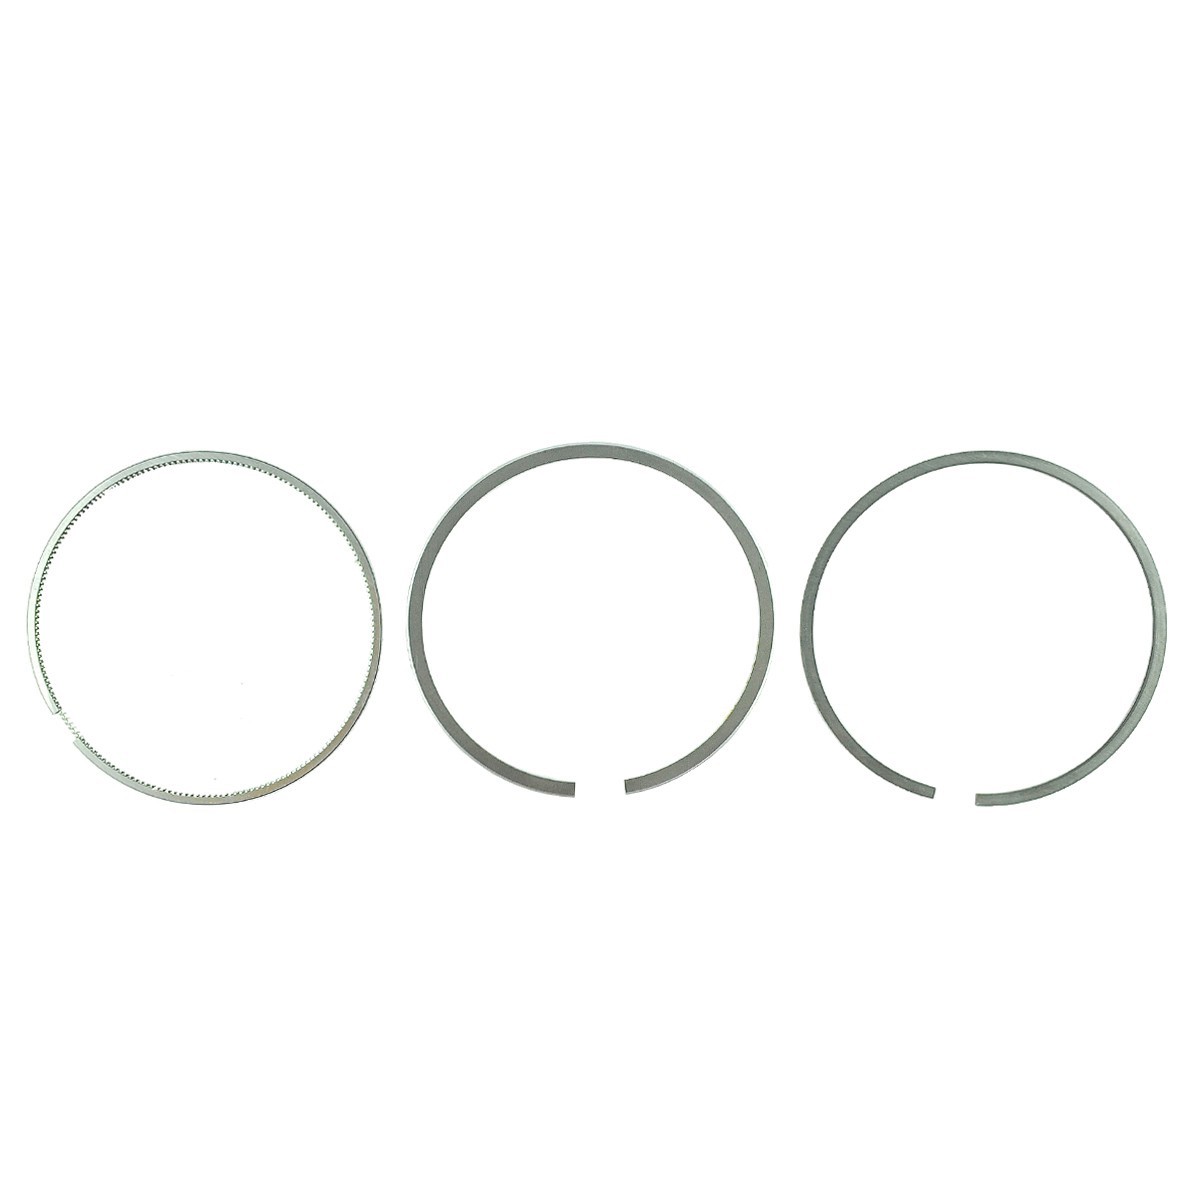 Pístní kroužky / Ø 76,50 mm / 2+1,5+4 / Kubota D1005/V1305 / 16271-21090